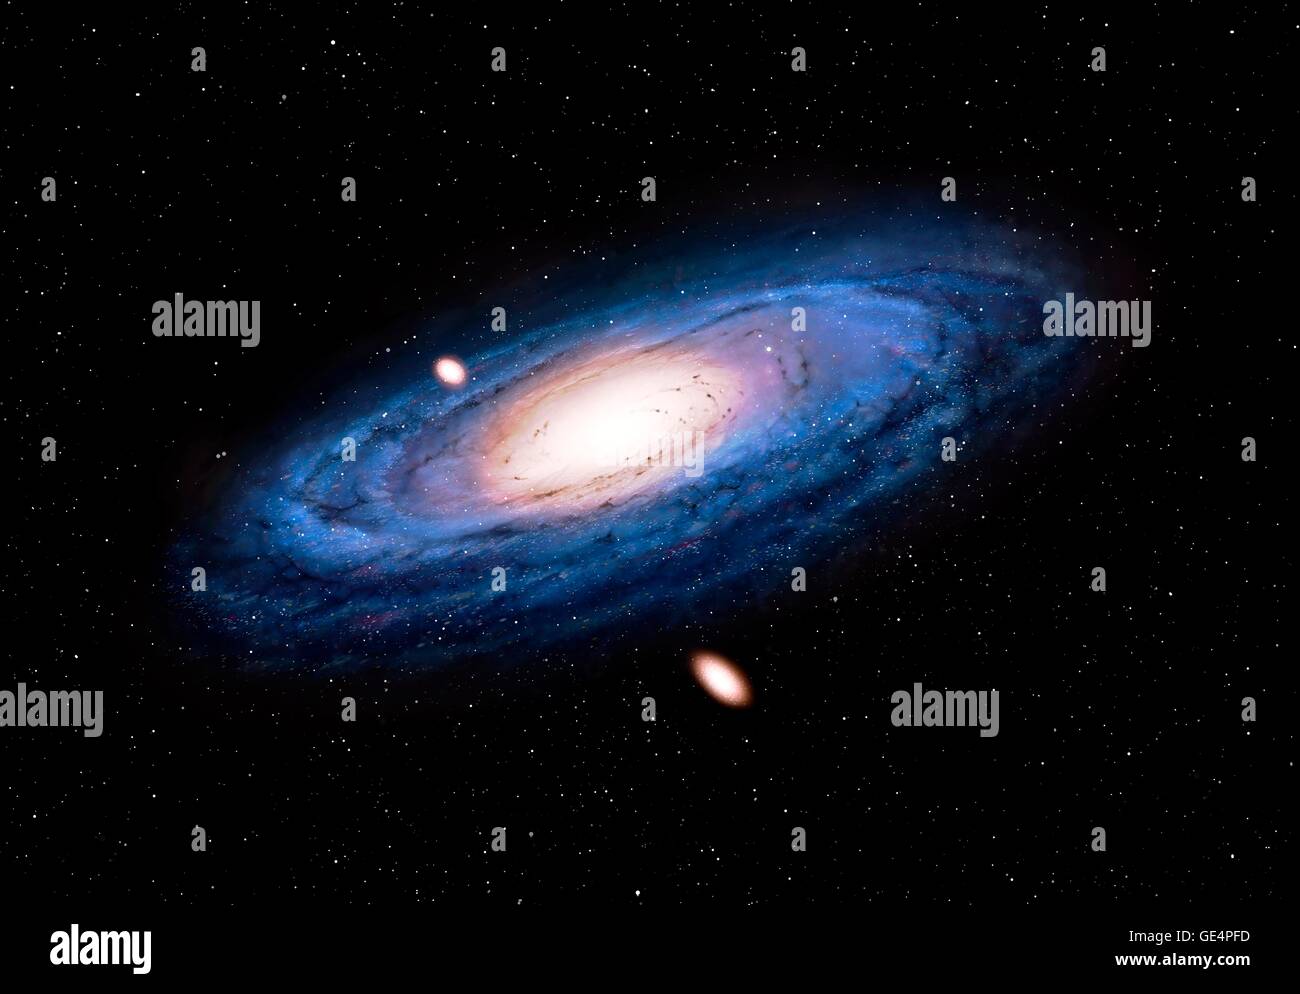 Andromeda-Galaxie, digitalen Kunstwerke. Andromeda ist die nächste große Galaxie zu unseren eigenen. Er misst rund 140 000 Lichtjahre über und ist befindet sich 2,5 Millionen Lichtjahre entfernt im Sternbild des gleichen Namens. Zwei seiner Satelliten Zwerggalaxien, M32 und M110, werden ebenfalls angezeigt. Stockfoto